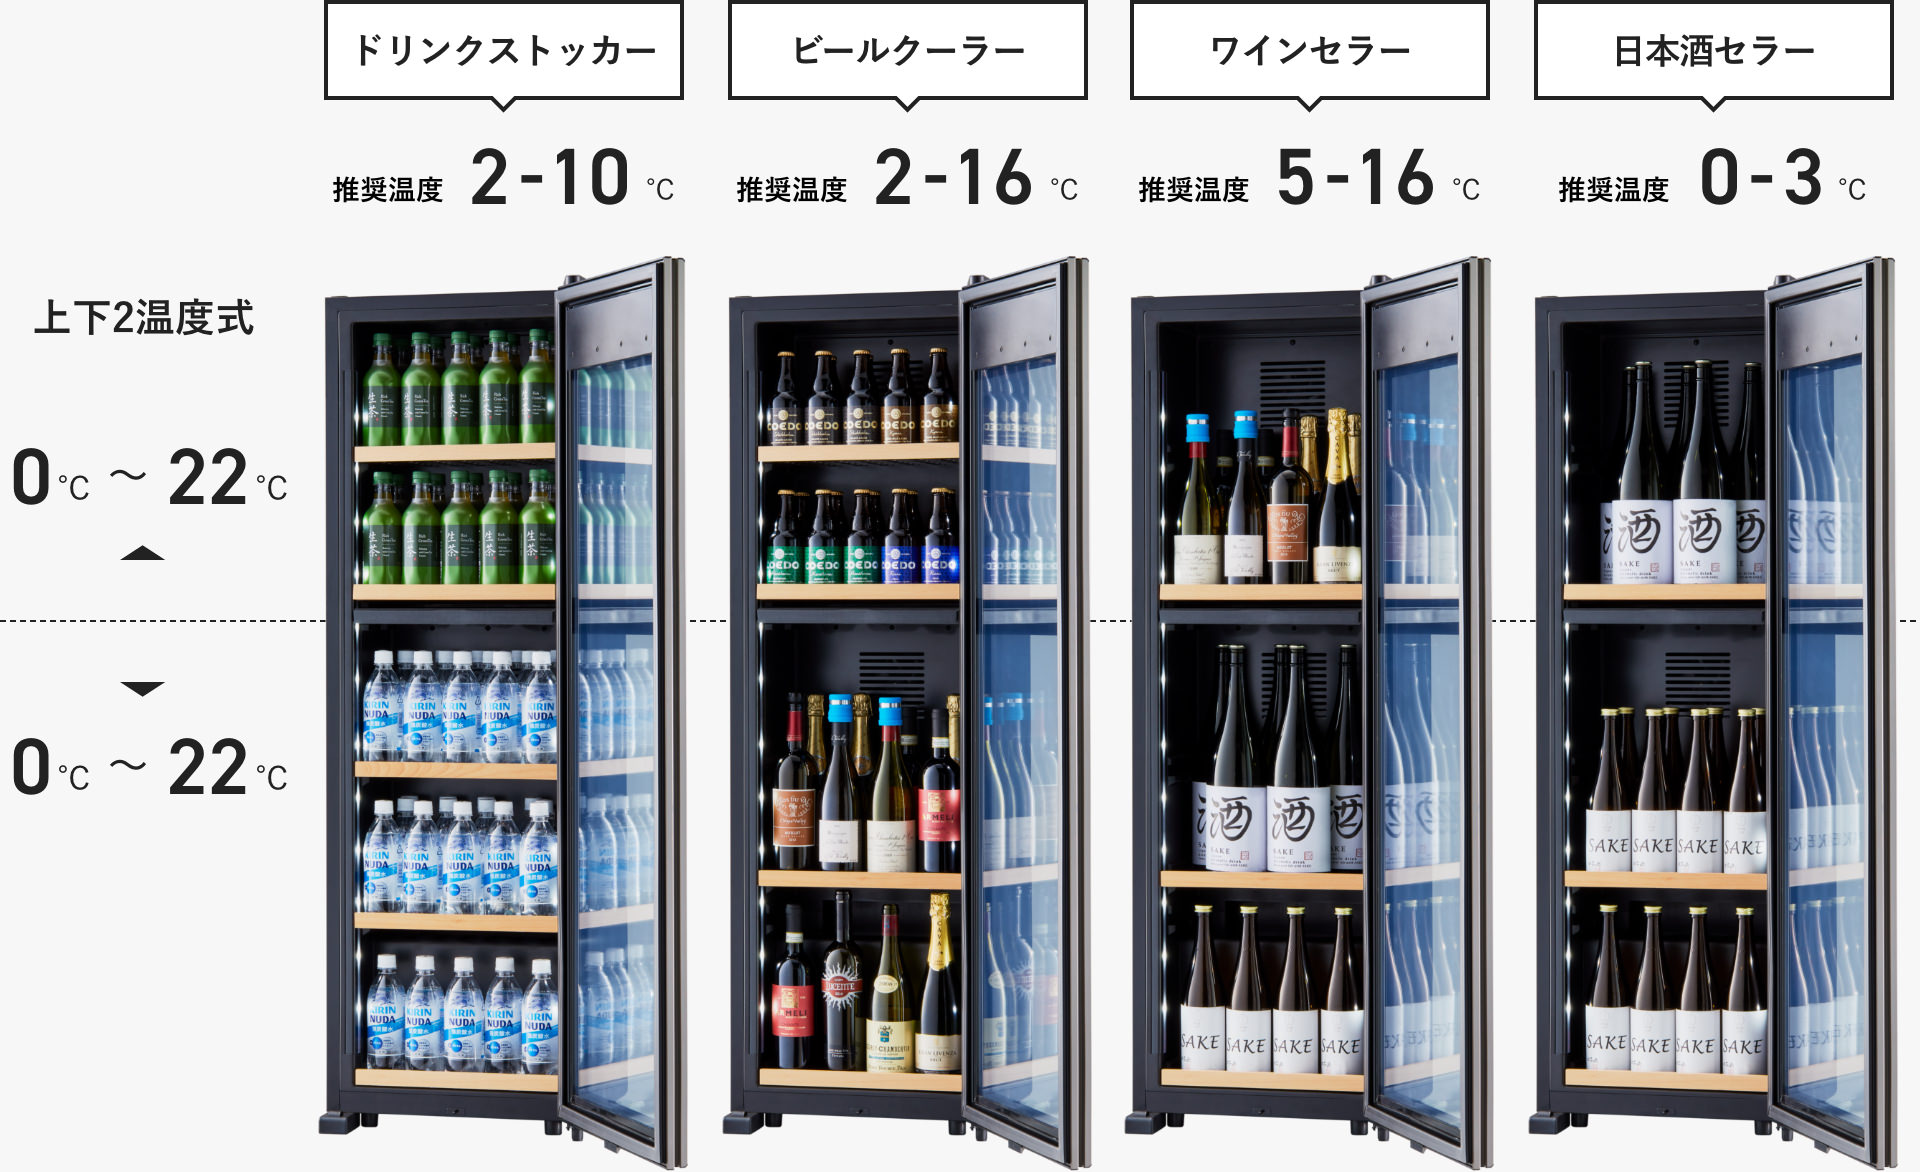 １着でも送料無料 OSK9-B CHILLED ZERO 低温日本酒\u0026ドリンクセラー さくら製作所 - 冷蔵庫 - hlt.no